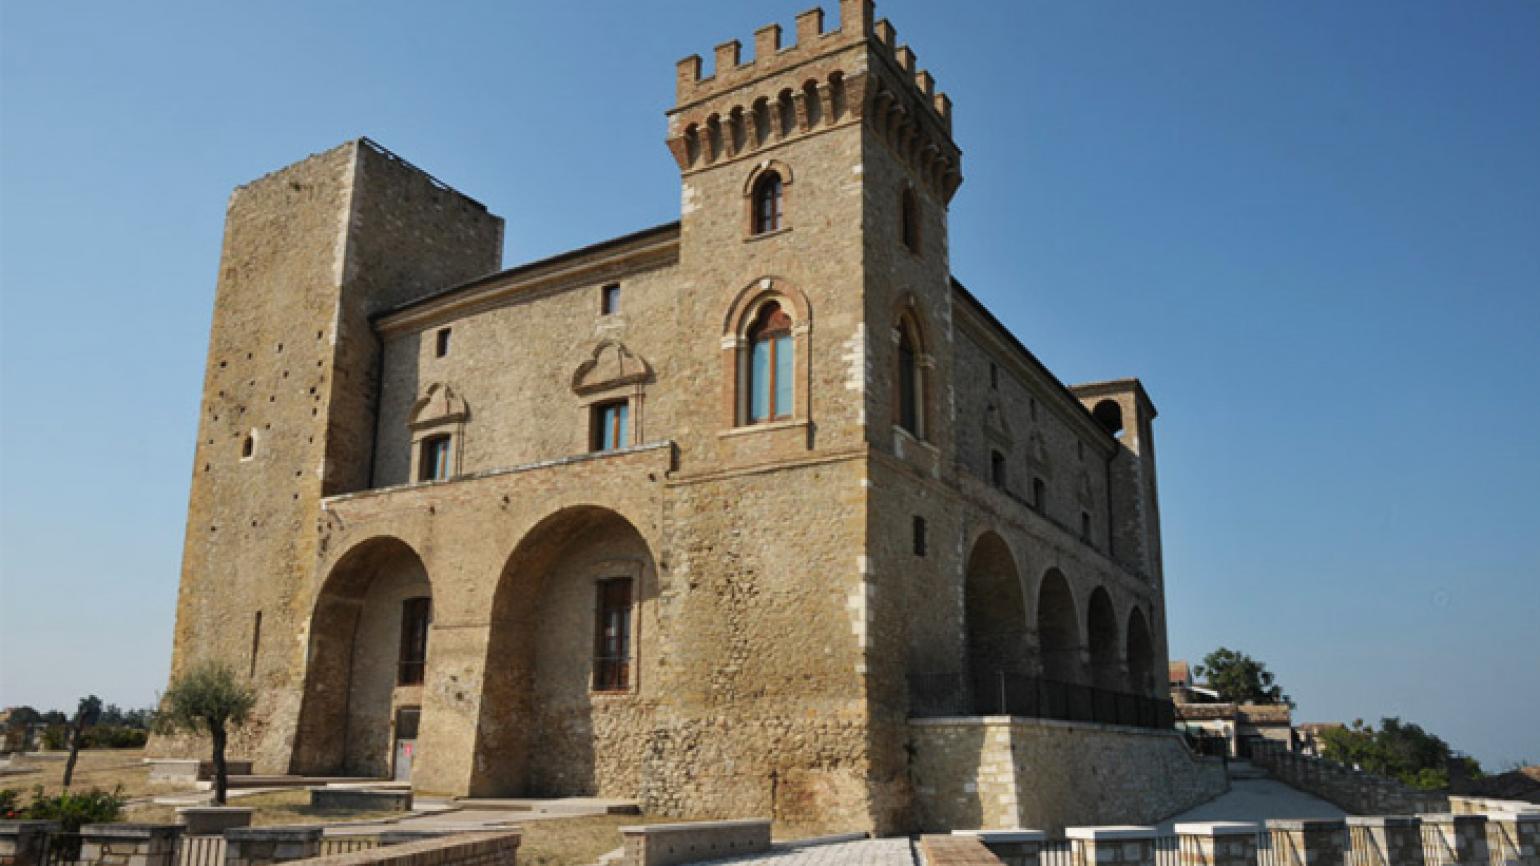 Crecchio (Ch), il Castello